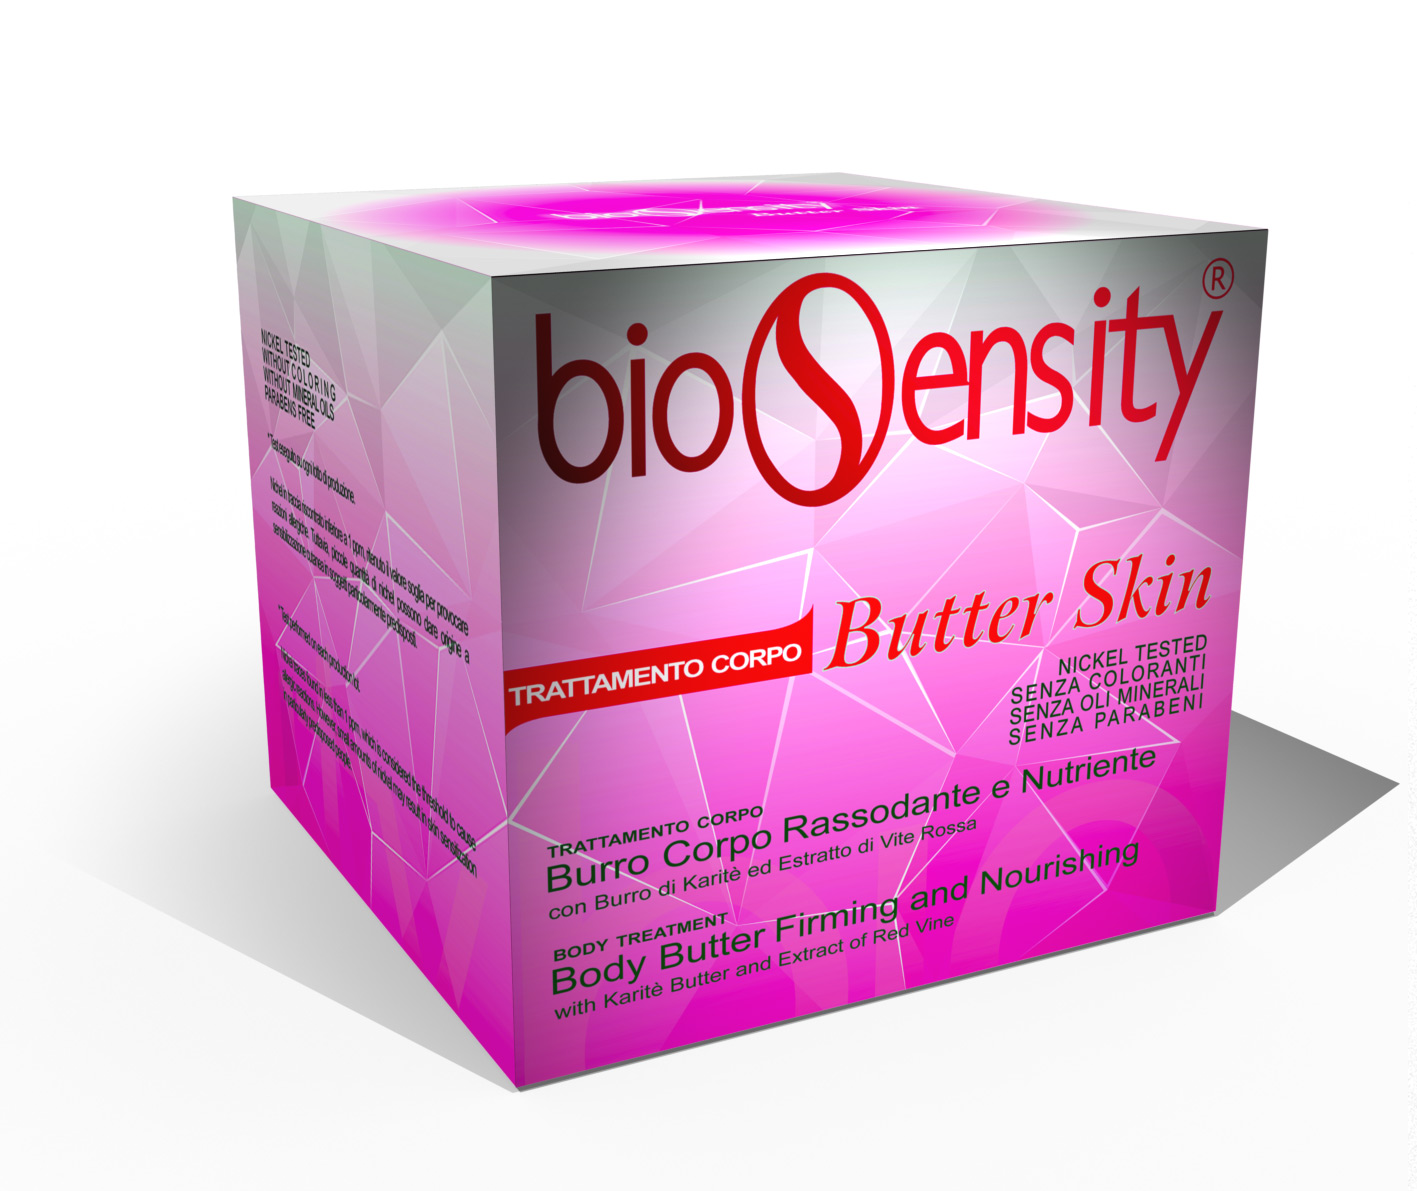 Biosensity Butter Skin